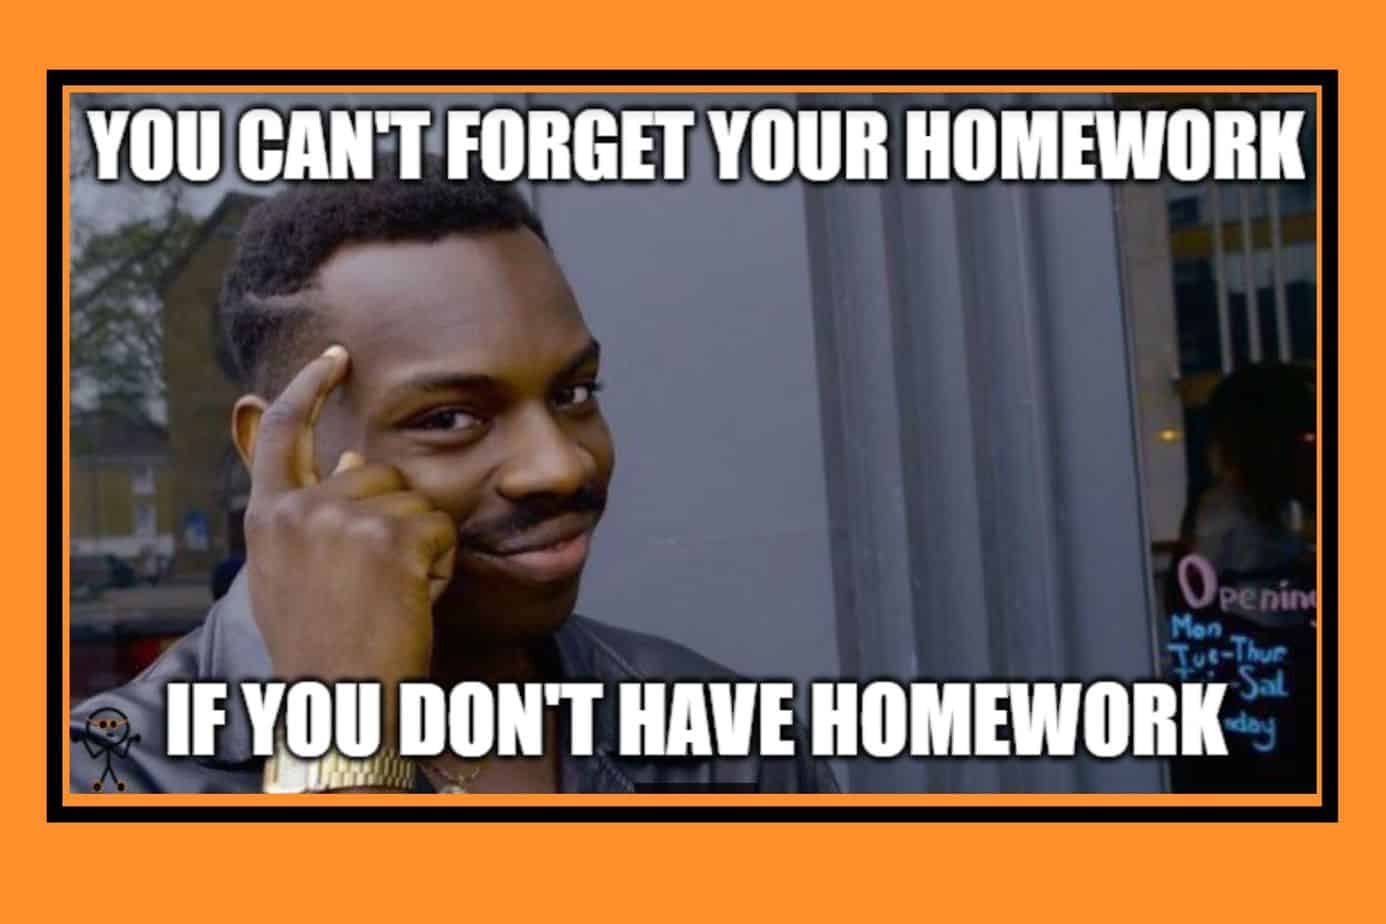 homeschool memes